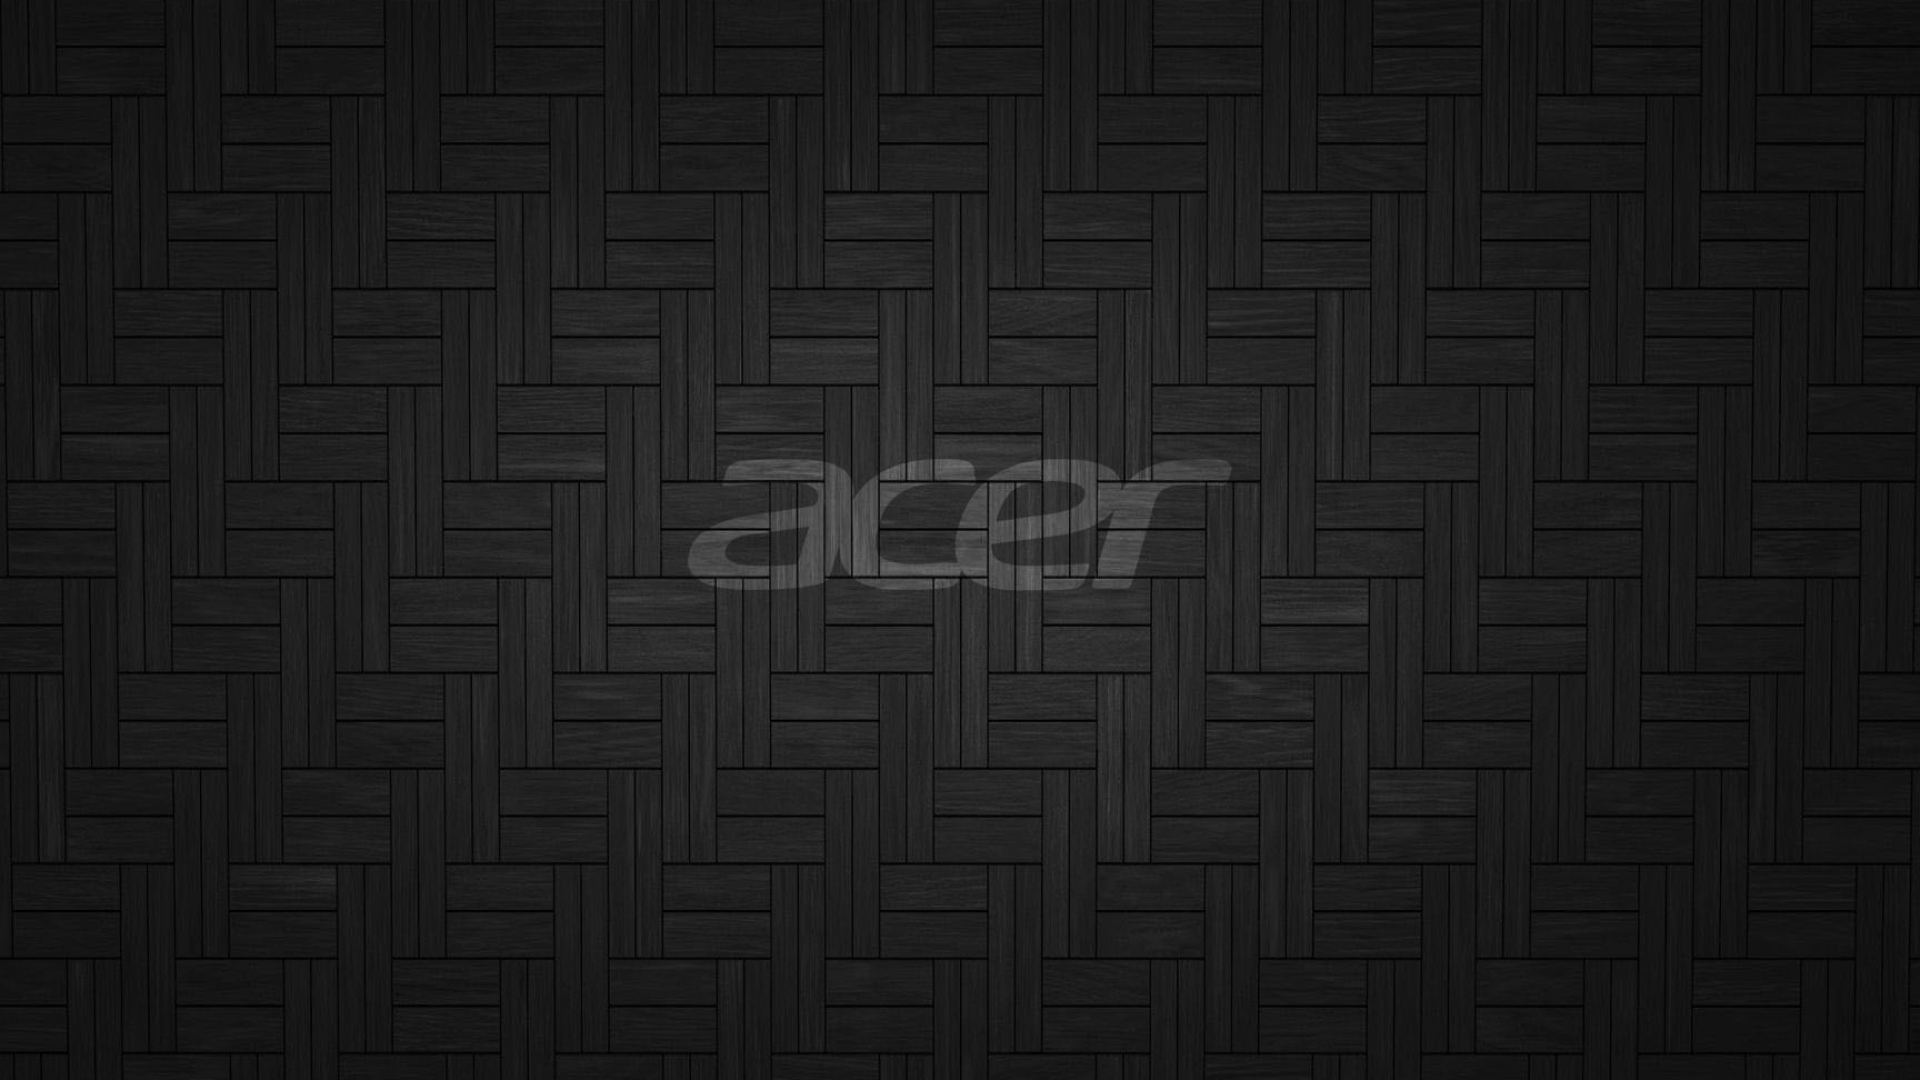 Dark Acer logo wallpaper, Acer, 1920x1080 Full HD Desktop